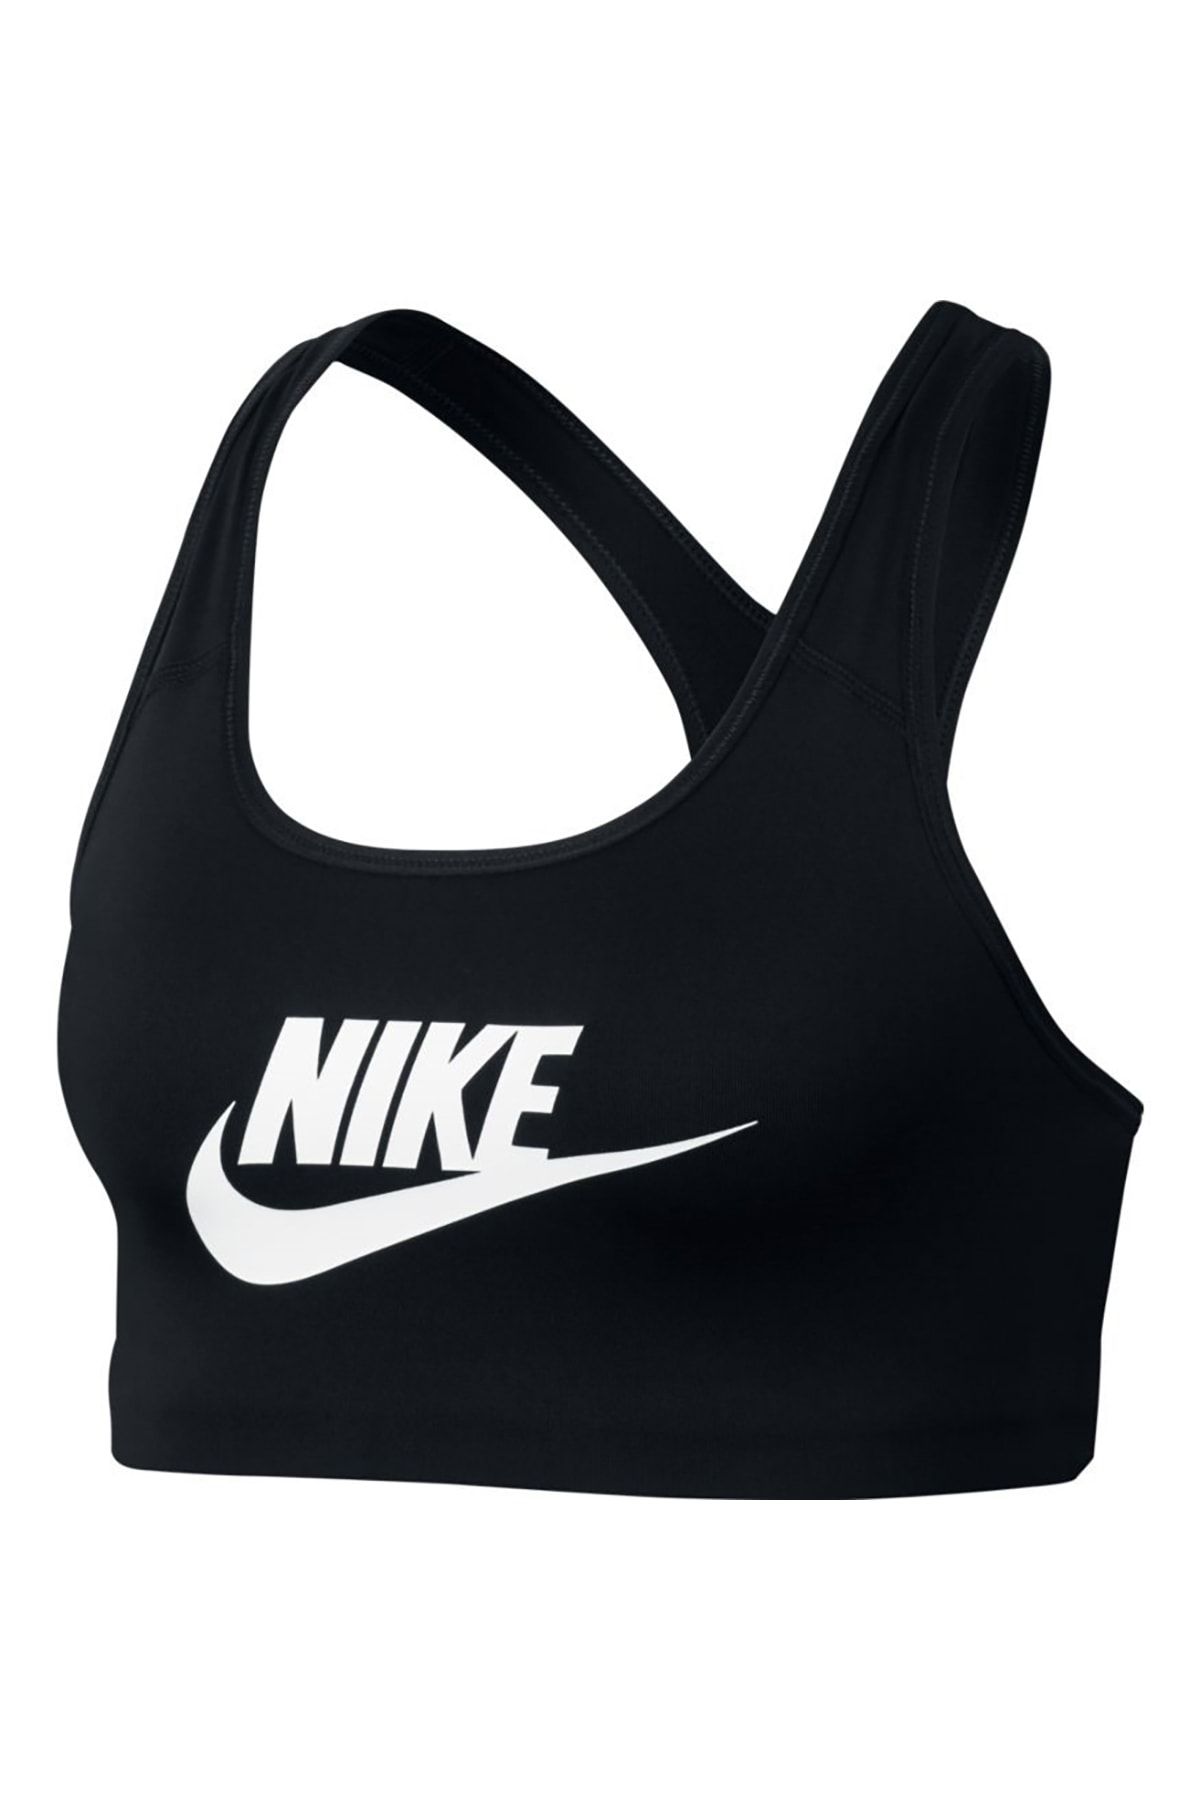 Nike Kadın Bustiyer - 899370-010